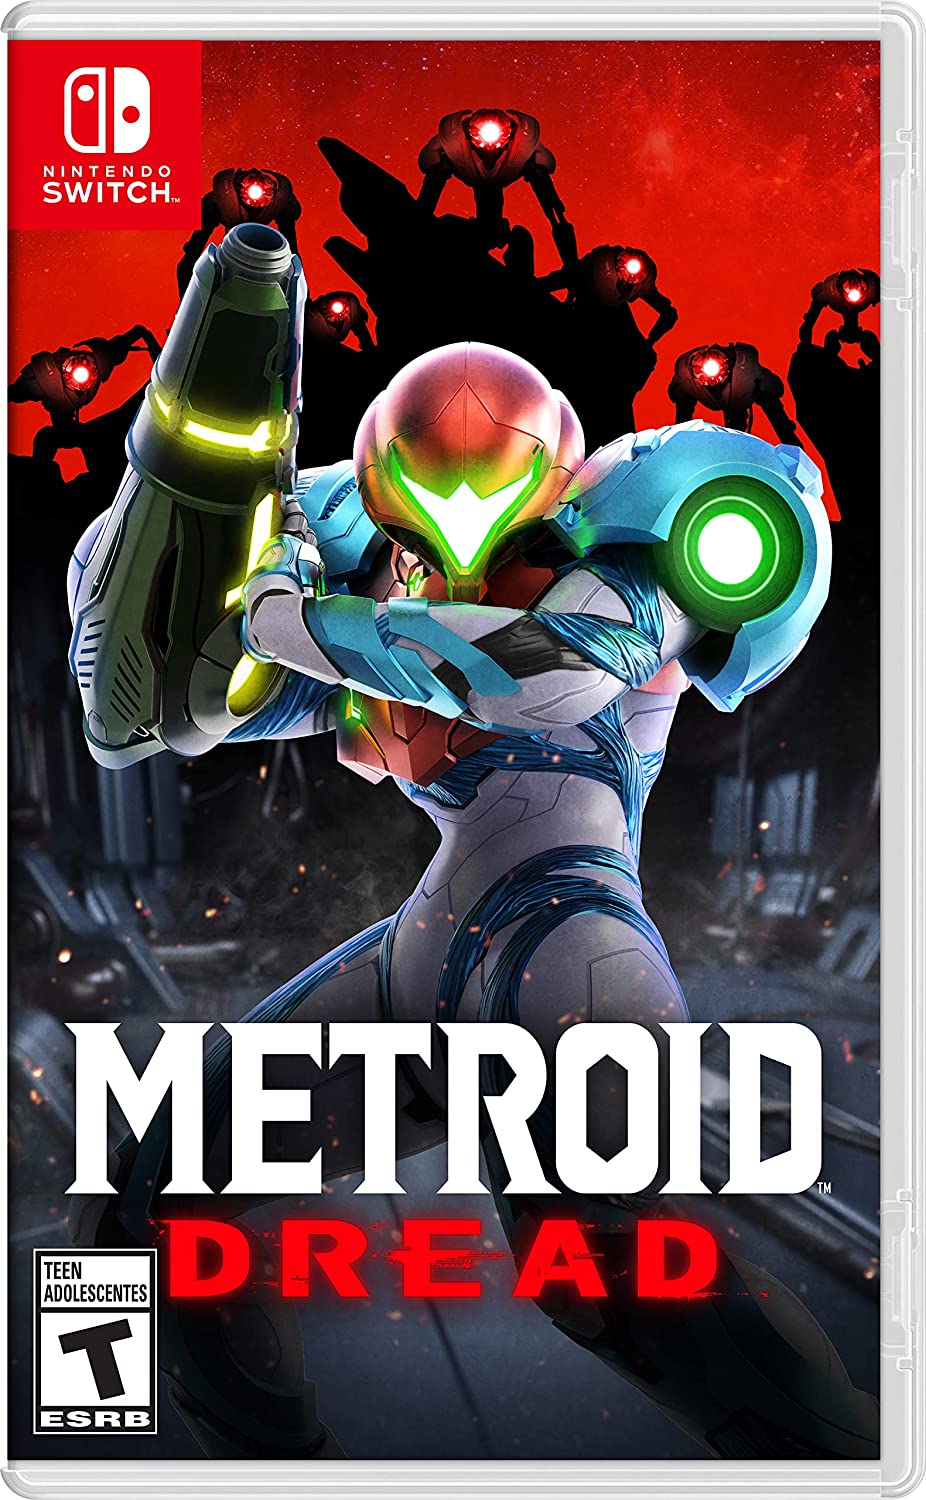 Couverture de Metroid Dread pour Nintendo Switch.